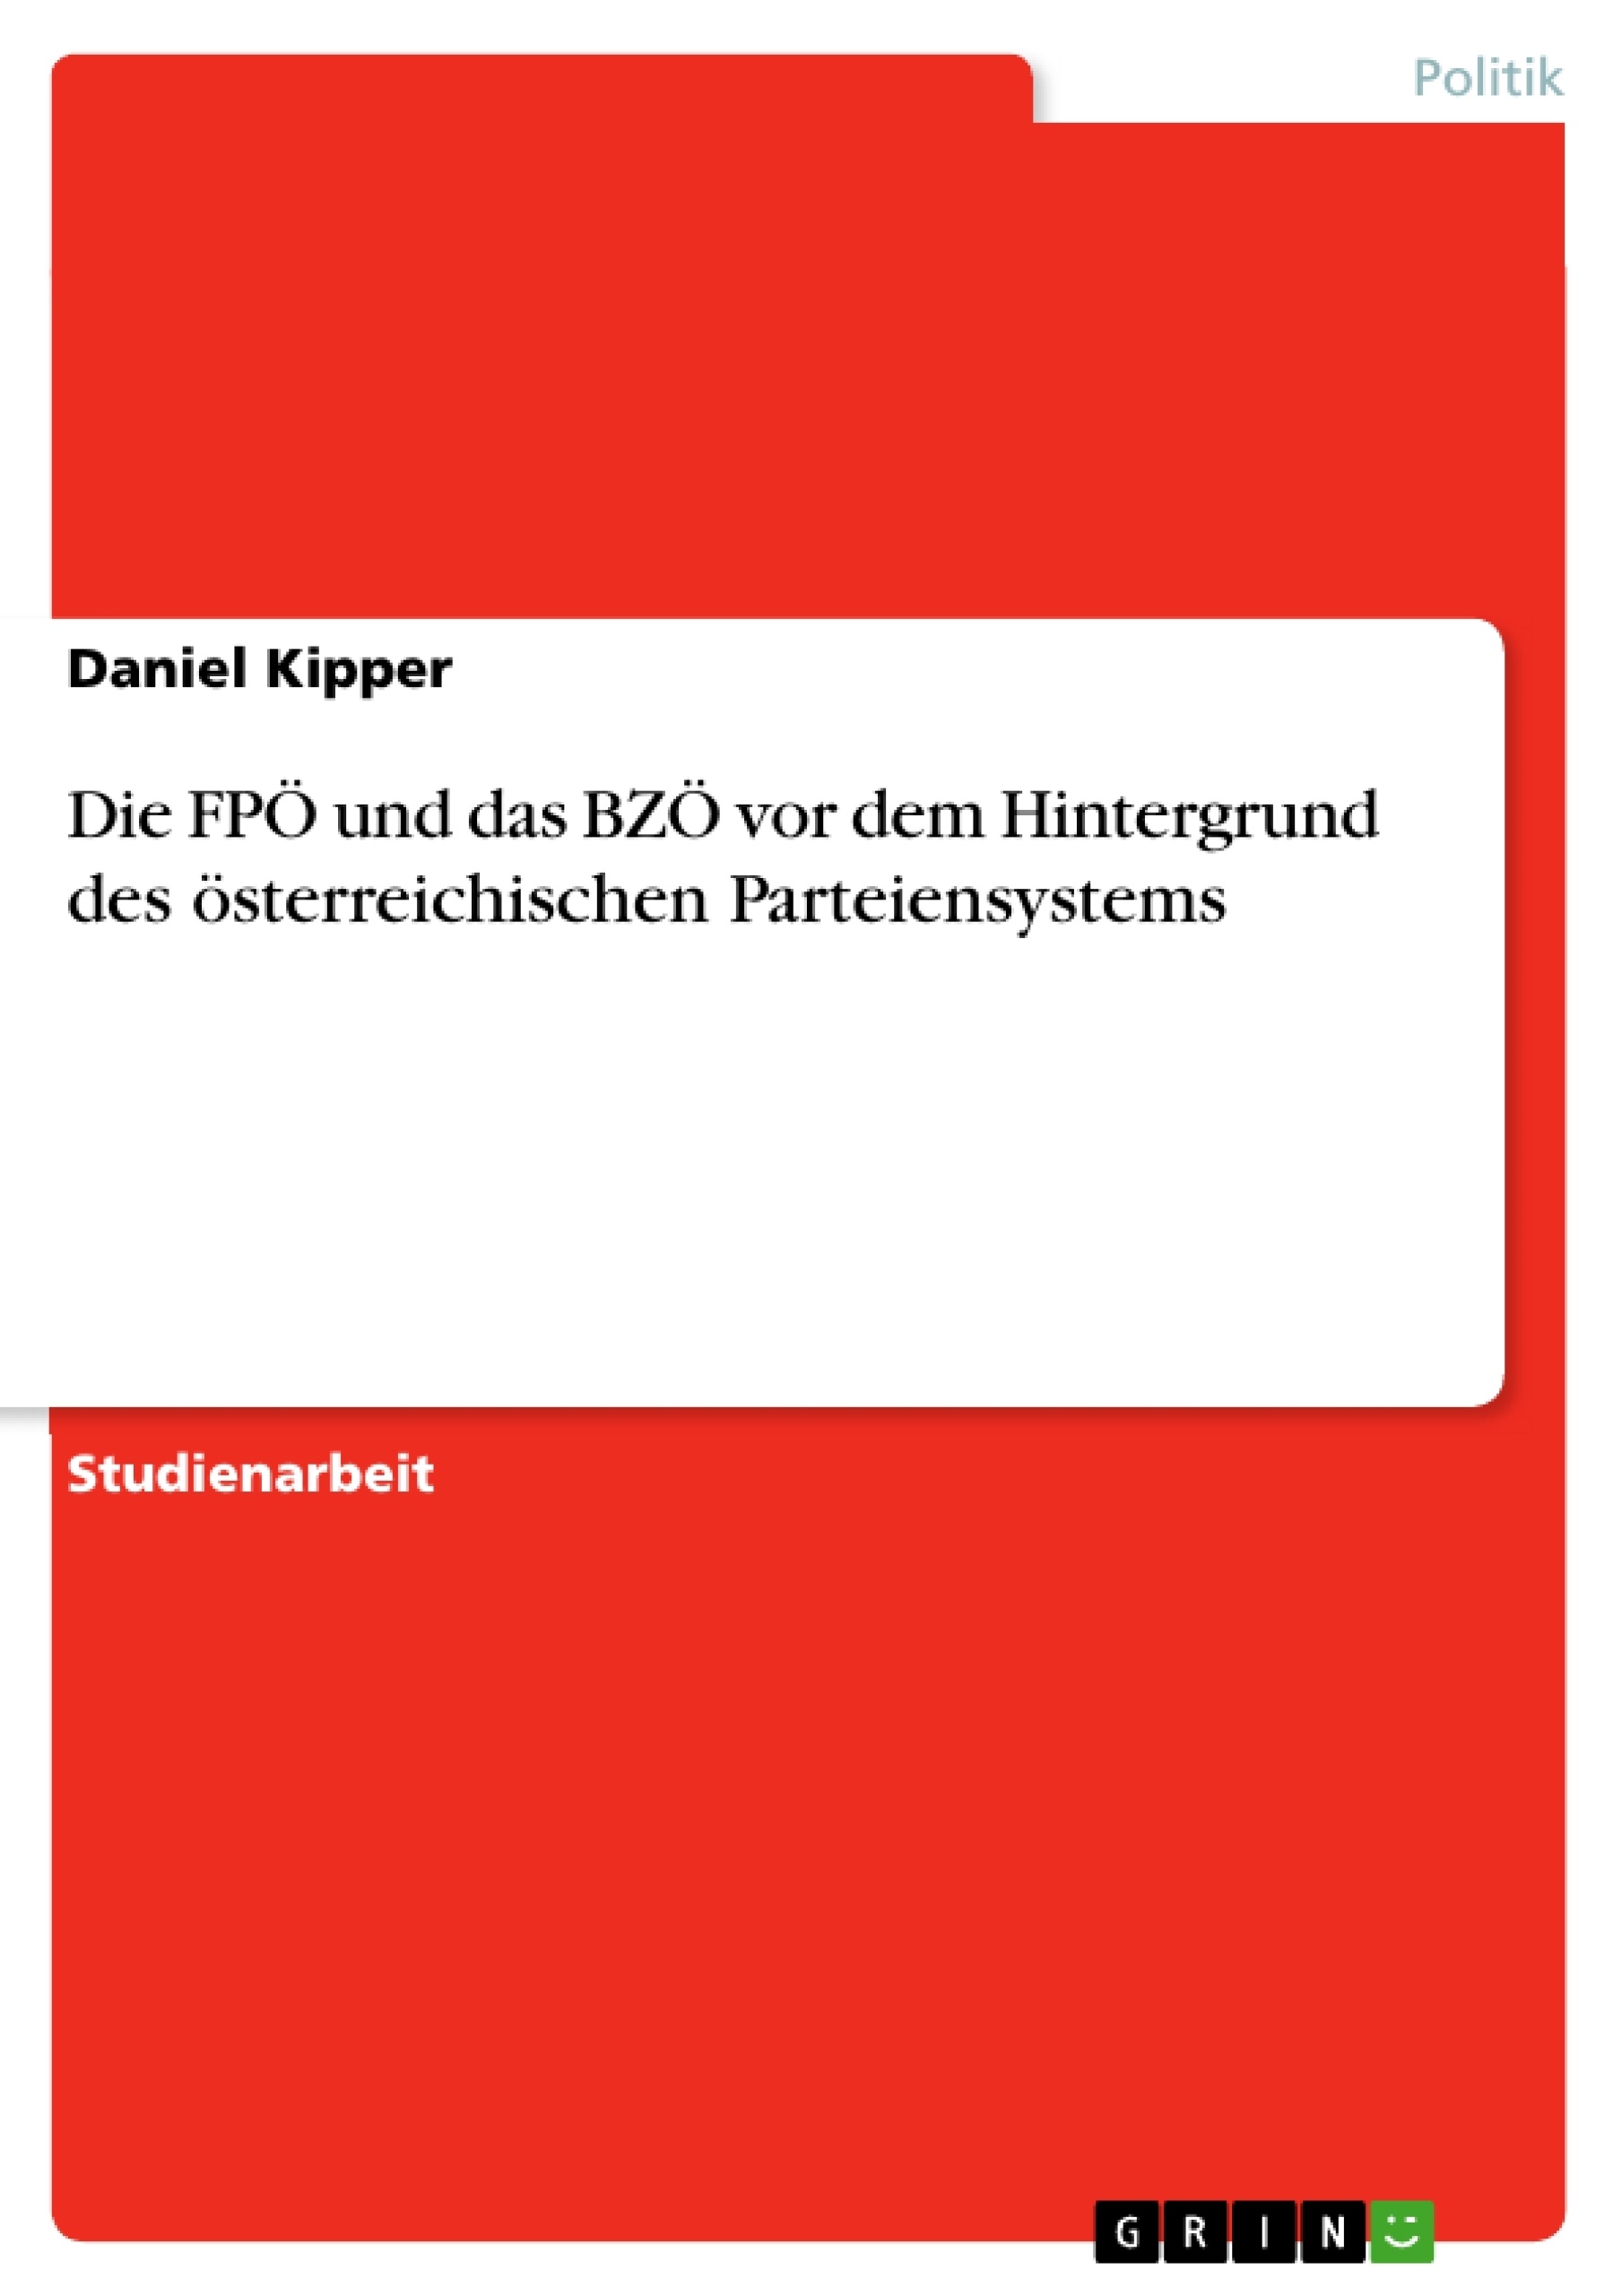 Title: Die FPÖ und das BZÖ vor dem Hintergrund des österreichischen Parteiensystems